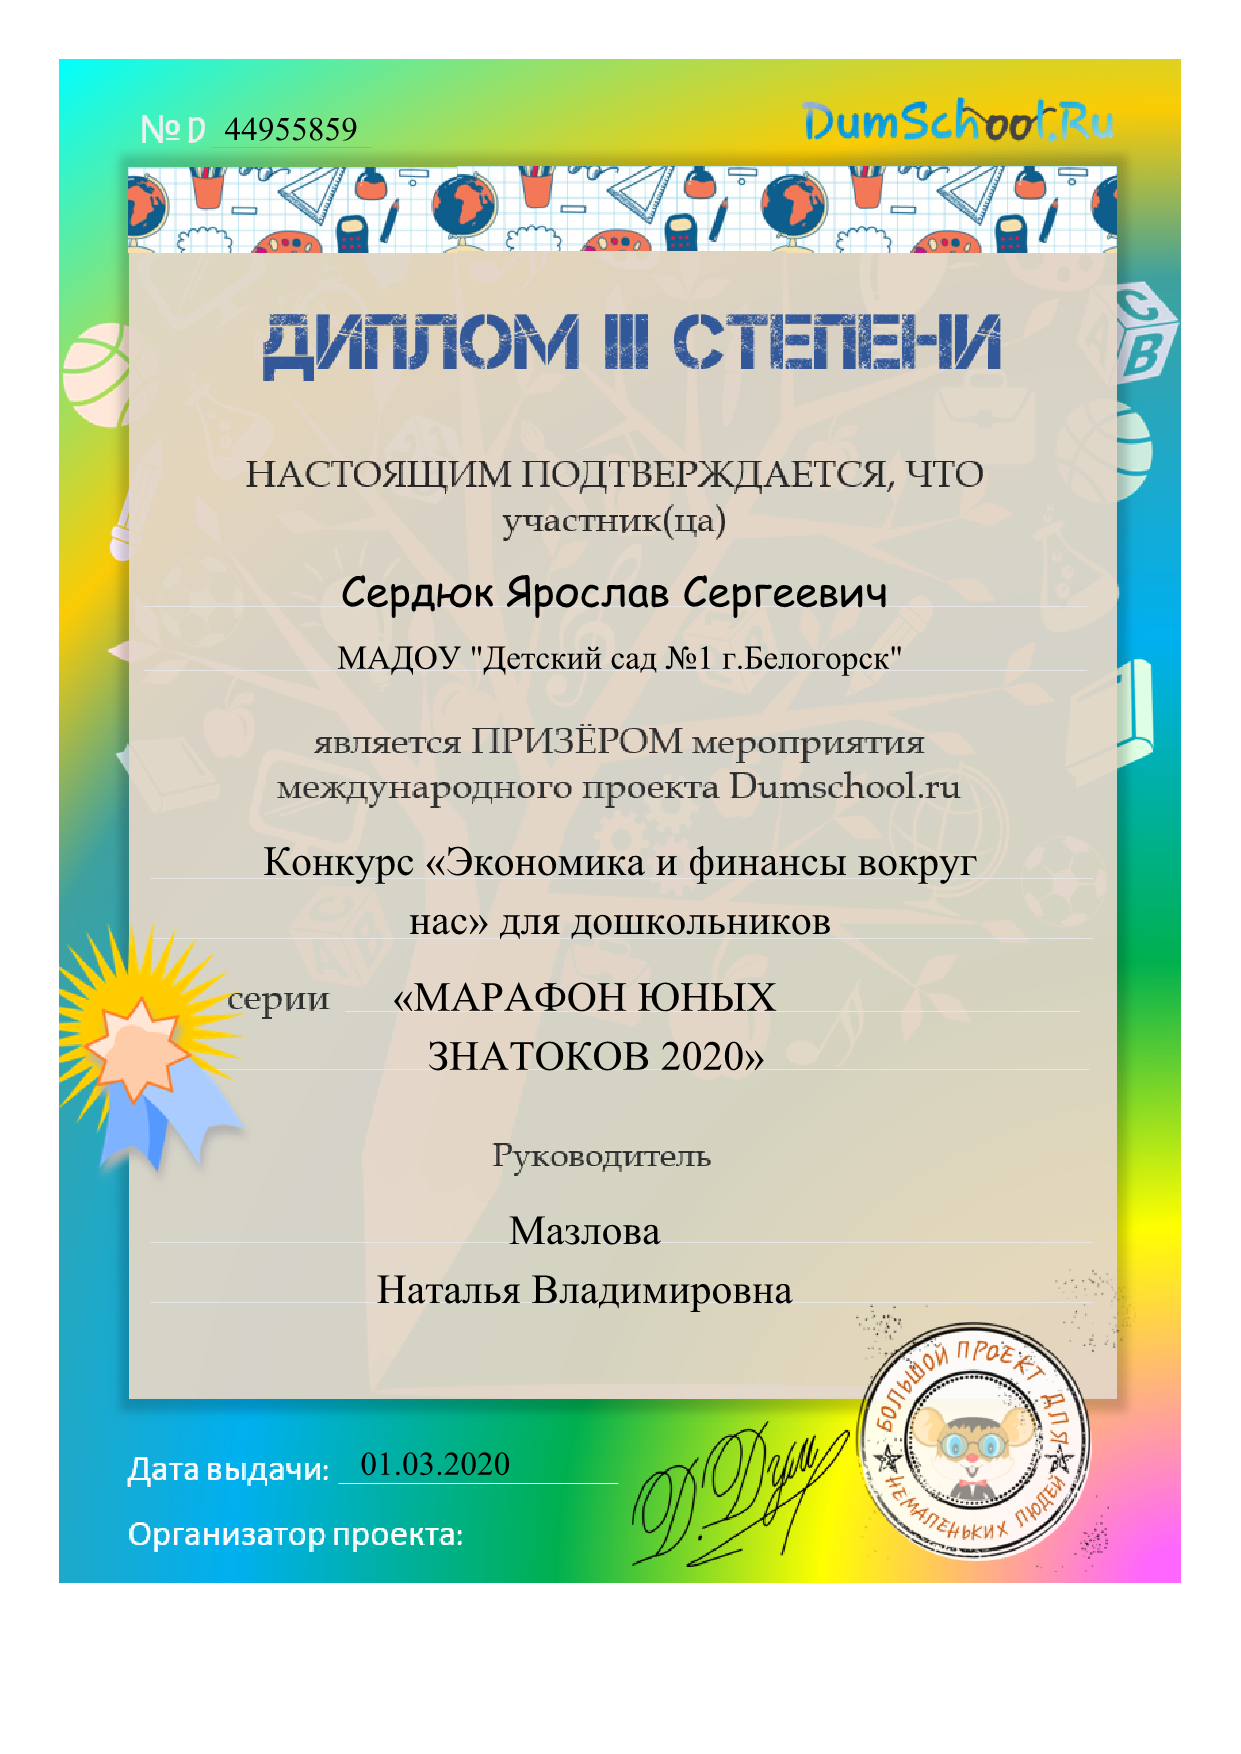 Диплом 3 степени Сердюк Ярослав